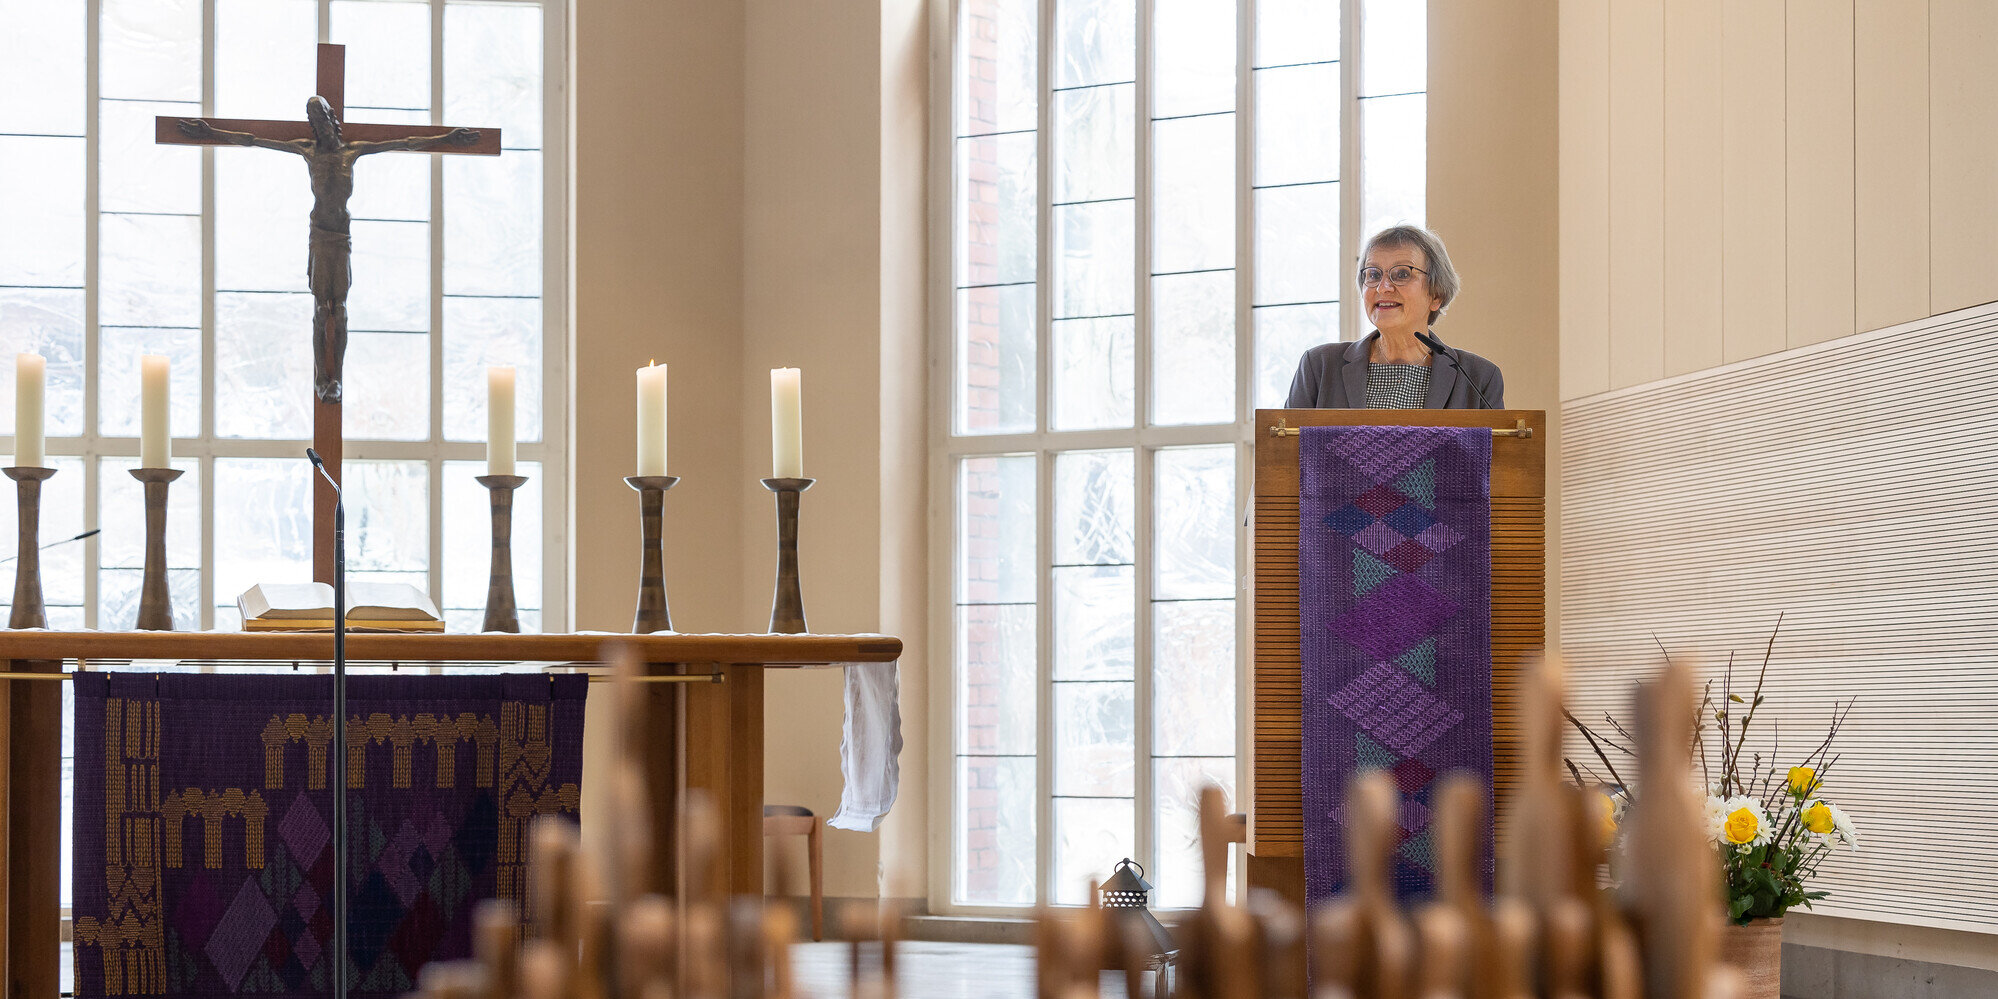 Pfarrerin Anne Hanhörster begrüßte die Gäste der Vernissage zur Ausstellung "Hoffnung".